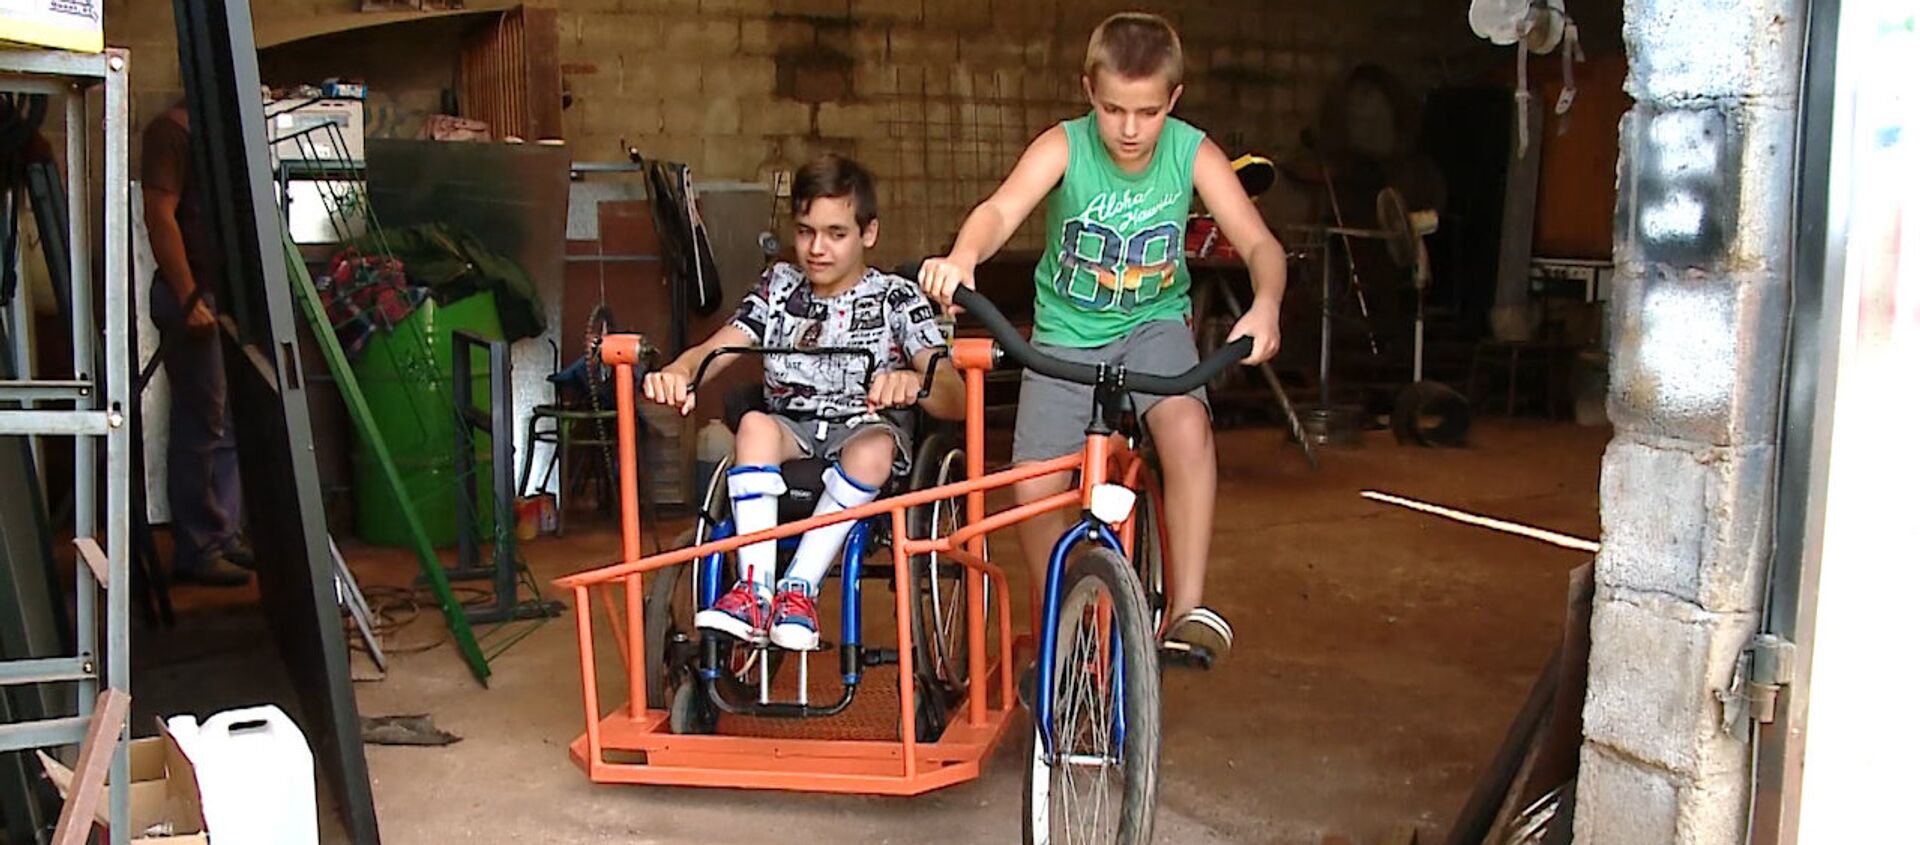 Un sueño hecho realidad: un niño argentino con discapacidad podrá ‘pasear’ en bicicleta - Sputnik Mundo, 1920, 09.01.2019